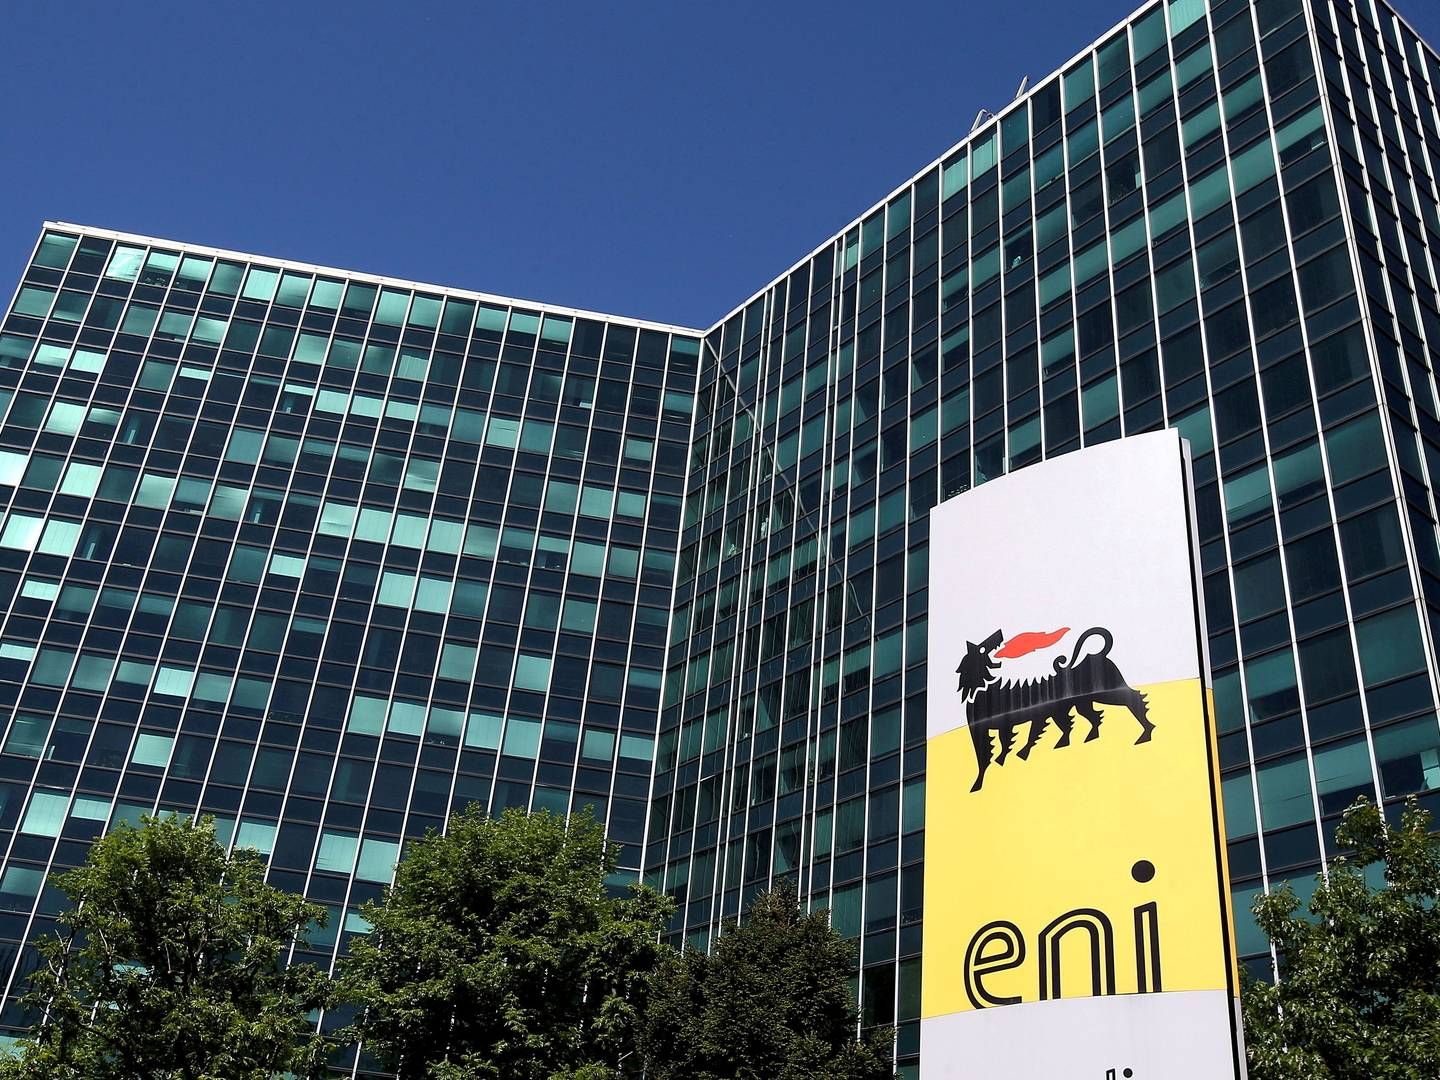 I Enis italienske hovedkontorer arbejder ledelsen med en idé om at slå sig sammen med BP i Angola. | Foto: STEFANO RELLANDINI/REUTERS / X90016